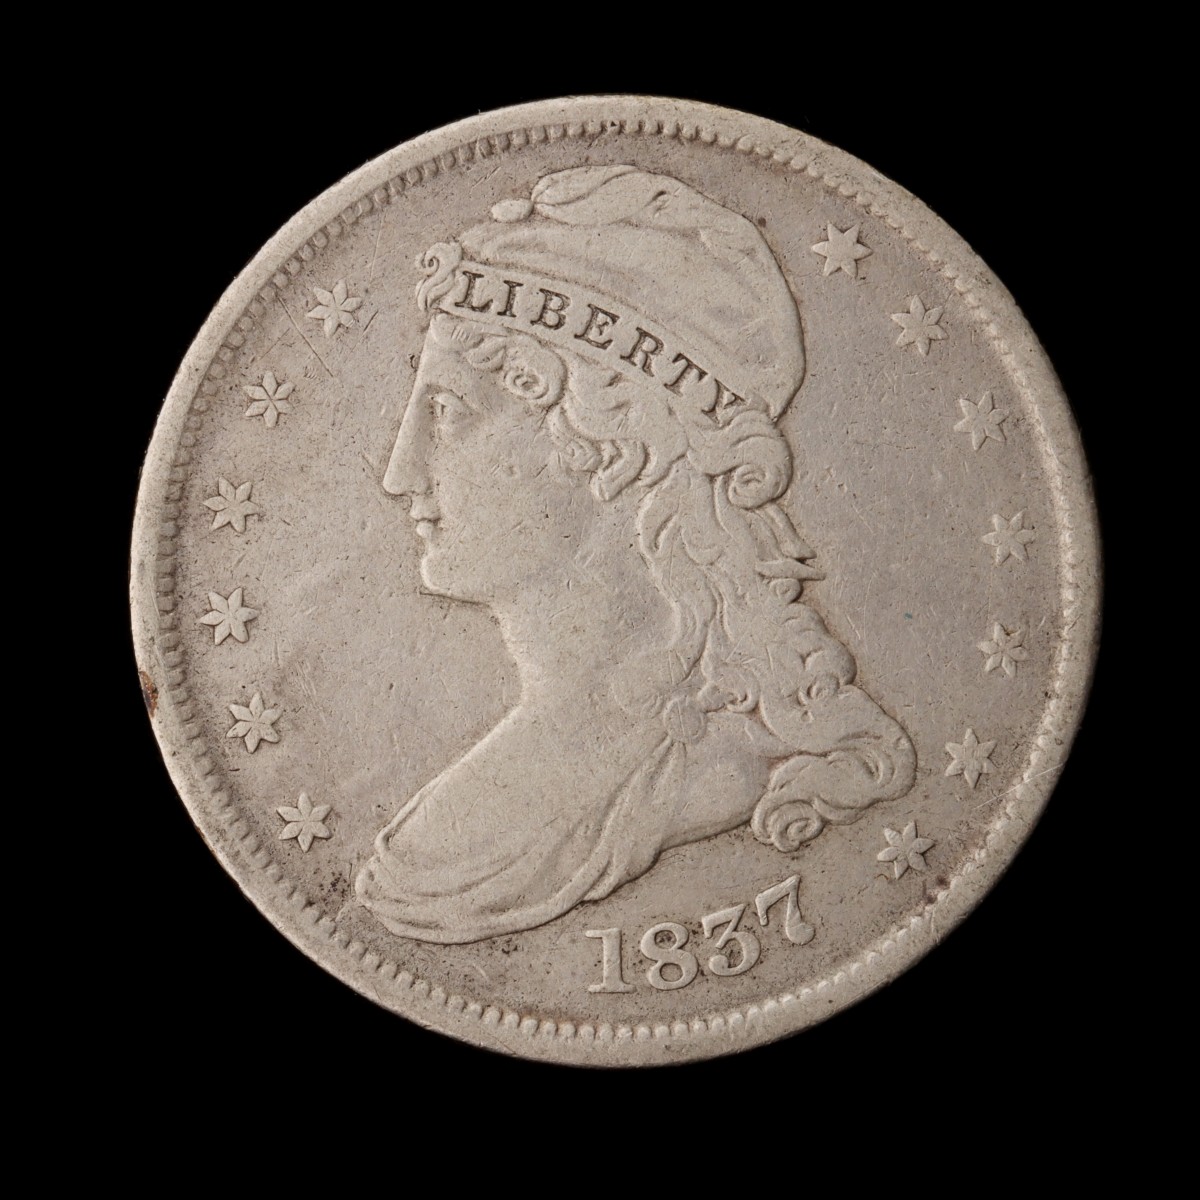 AN 1837 CAPPED BUST HALF DOLLAR